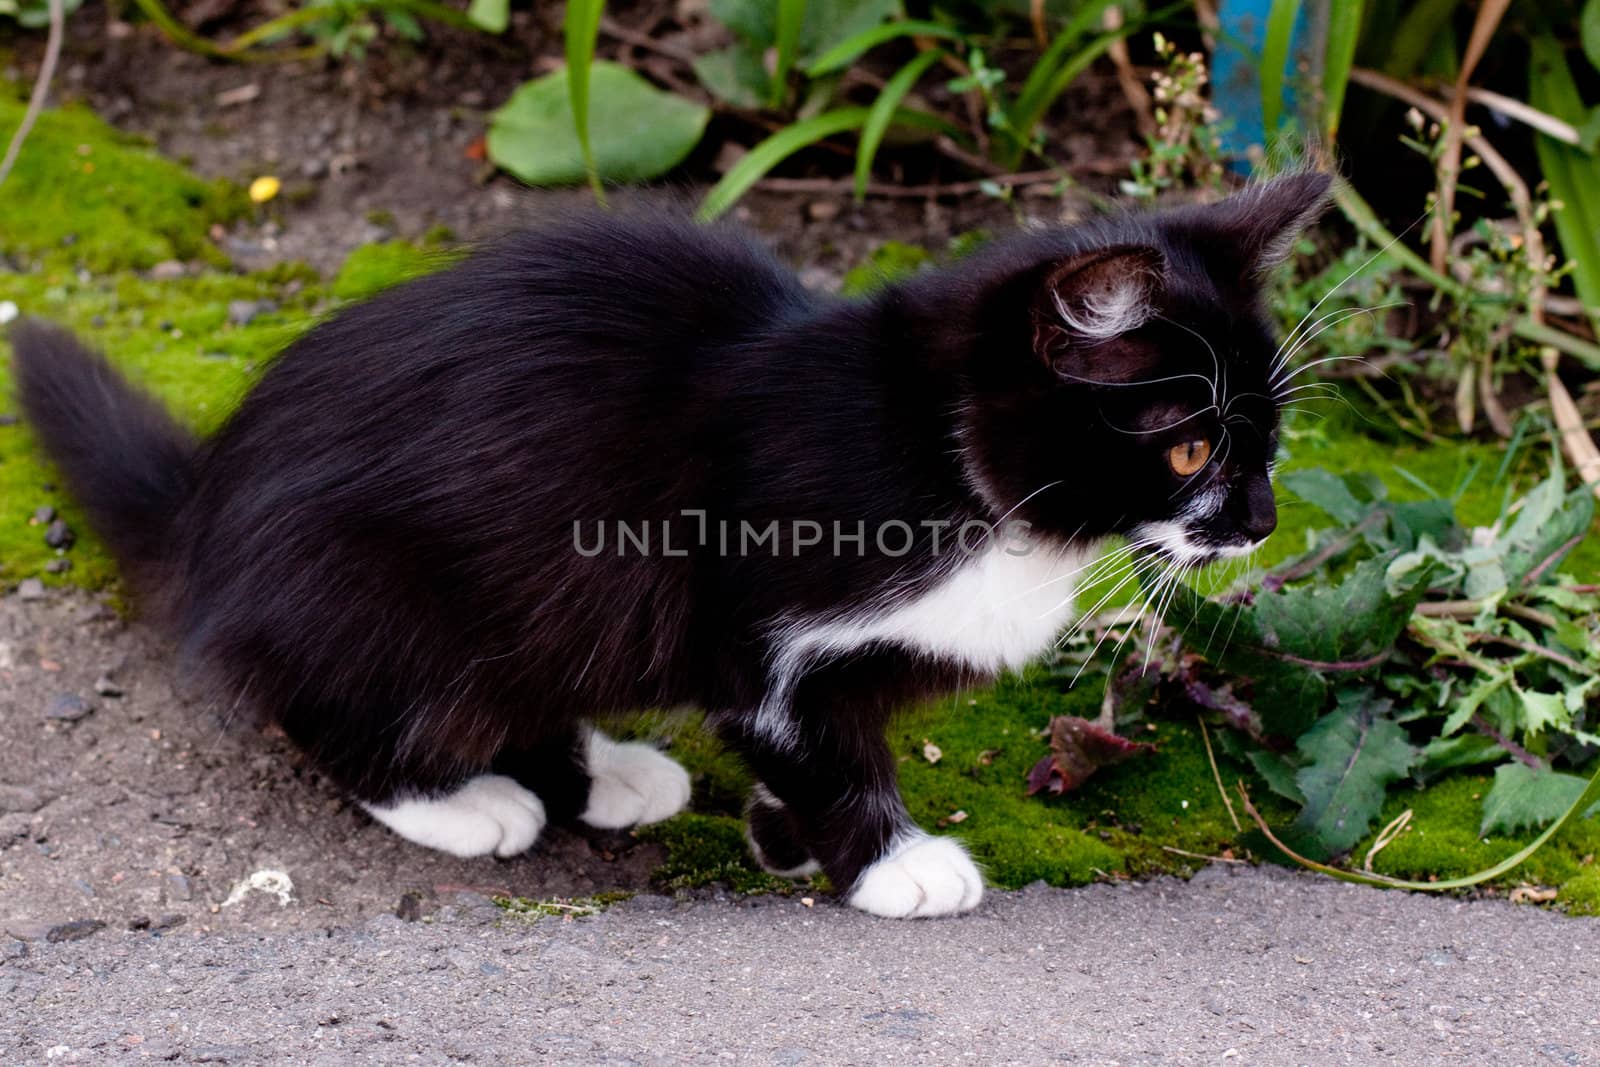 black and white kitten walking along grass
